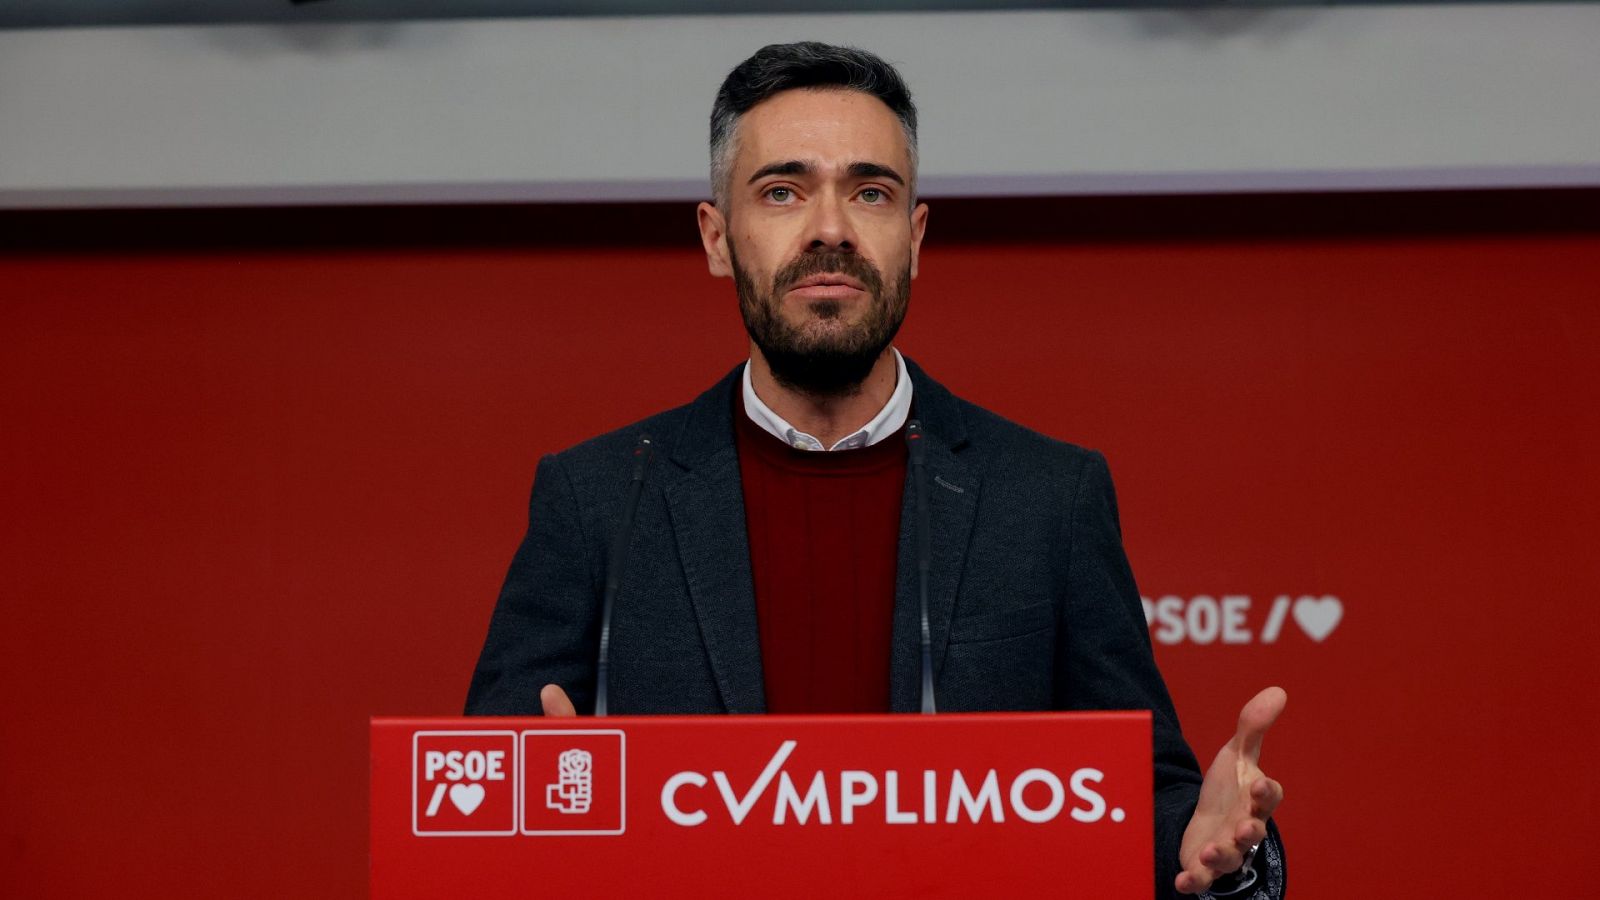 Sicilia (PSOE), sobre la reforma laboral: "Es una reforma de país"